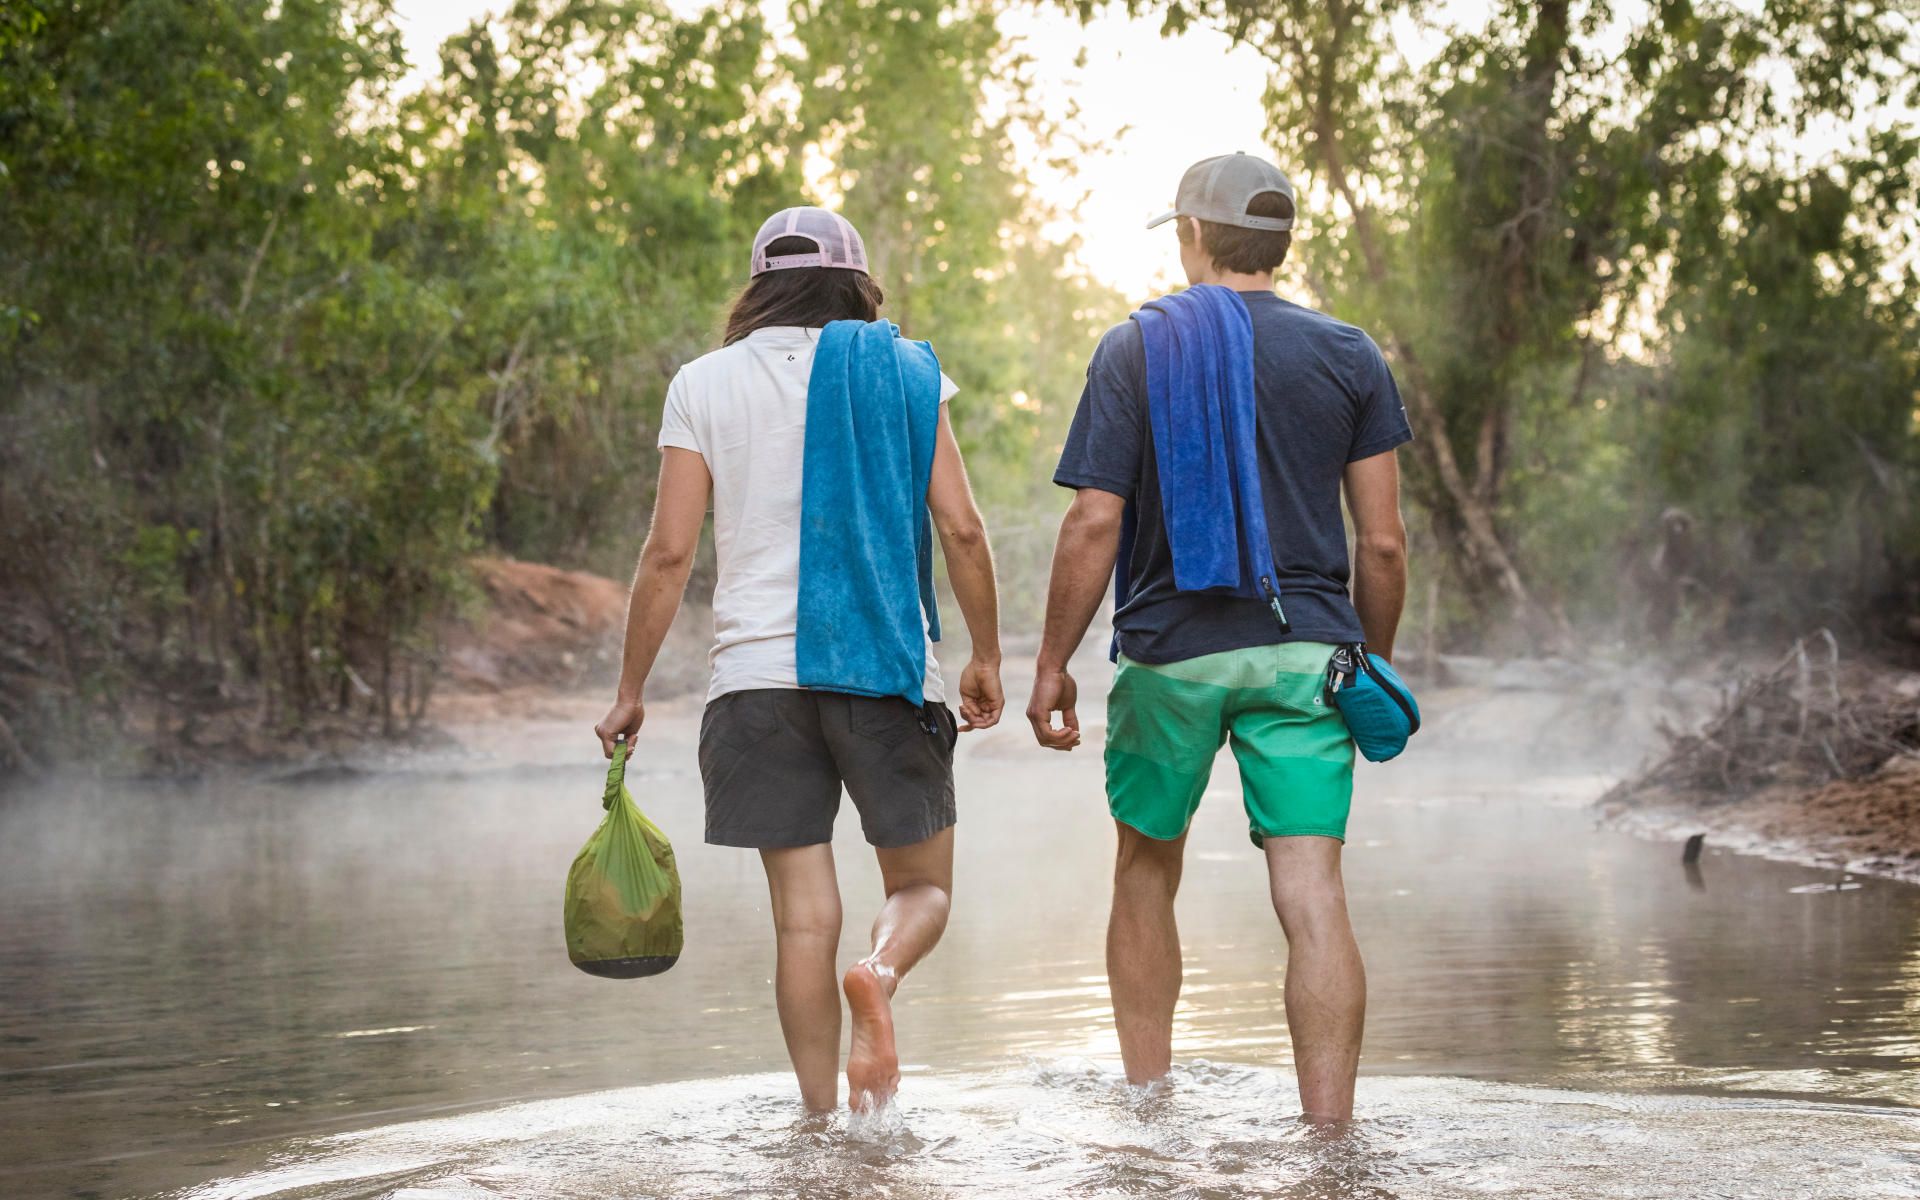 Zwei Reisende schlendern durchs Wasser, dabei einen Dry Bag, um die wertvollsten Gegenstände trocken zu halten - ein wahnsinnig nützliches Gadget auf Reisen.